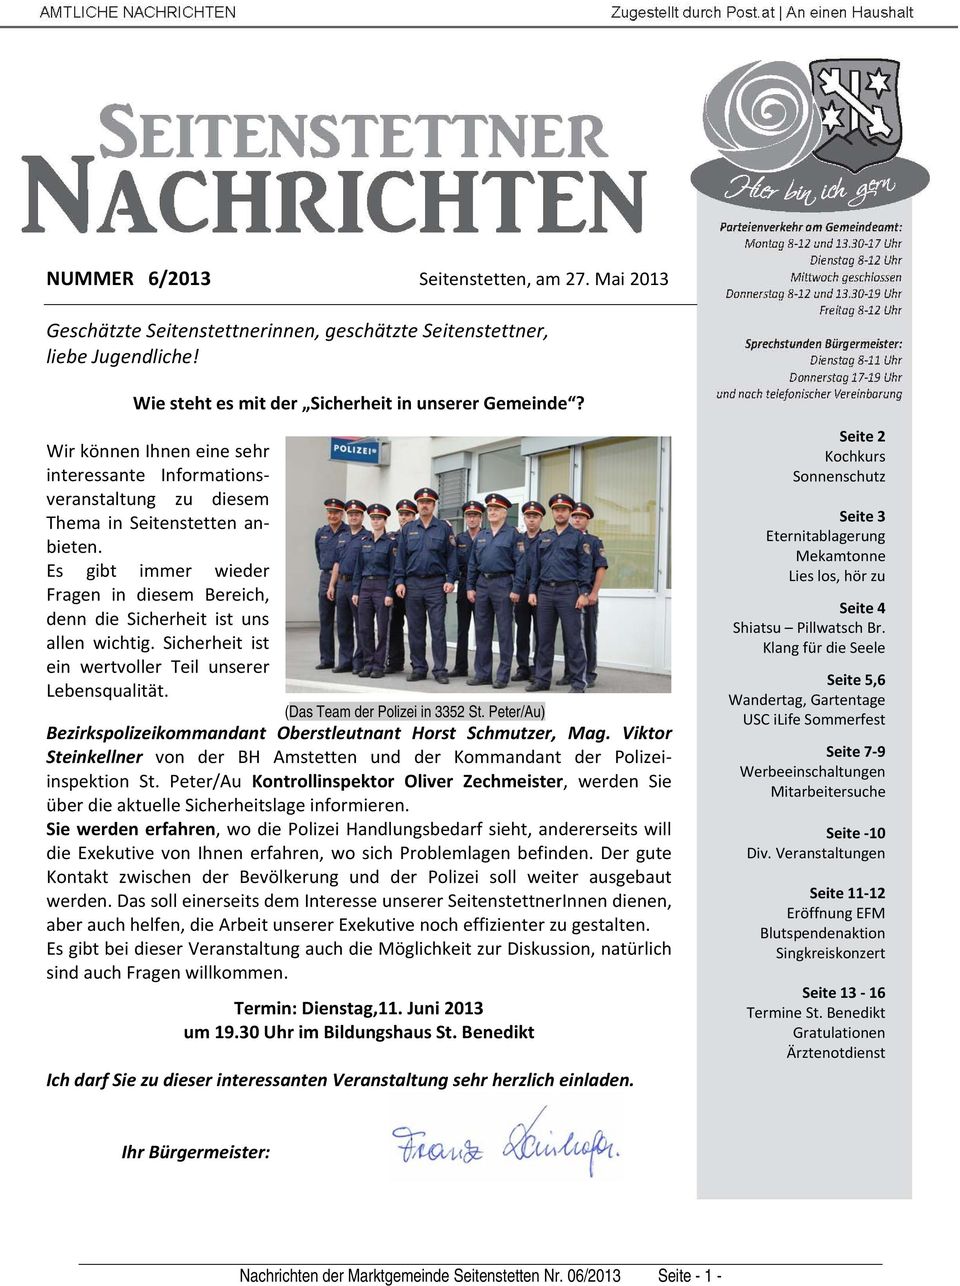 Sicherheit ist ein wertvoller Teil unserer Lebensqualität. (Das Team der Polizei in 3352 St. Peter/Au) Bezirkspolizeikommandant Oberstleutnant Horst Schmutzer, Mag.